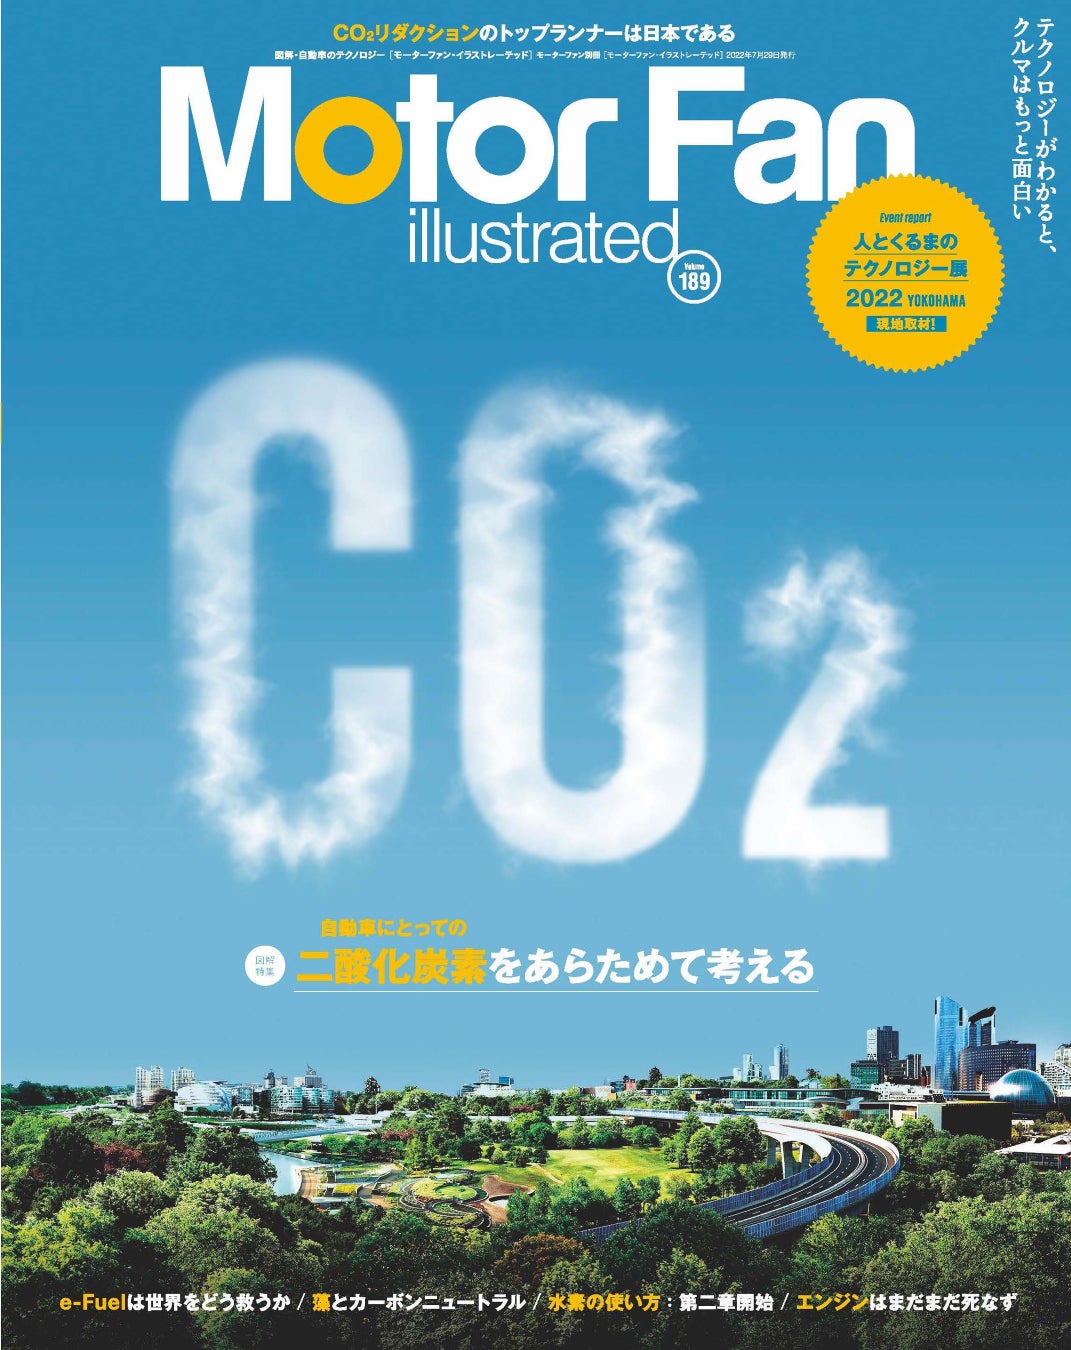 二酸化炭素とどう付き合うのか モーターファン イラストレーテッド Vol 1 は Co2 を特集 三栄のプレスリリース